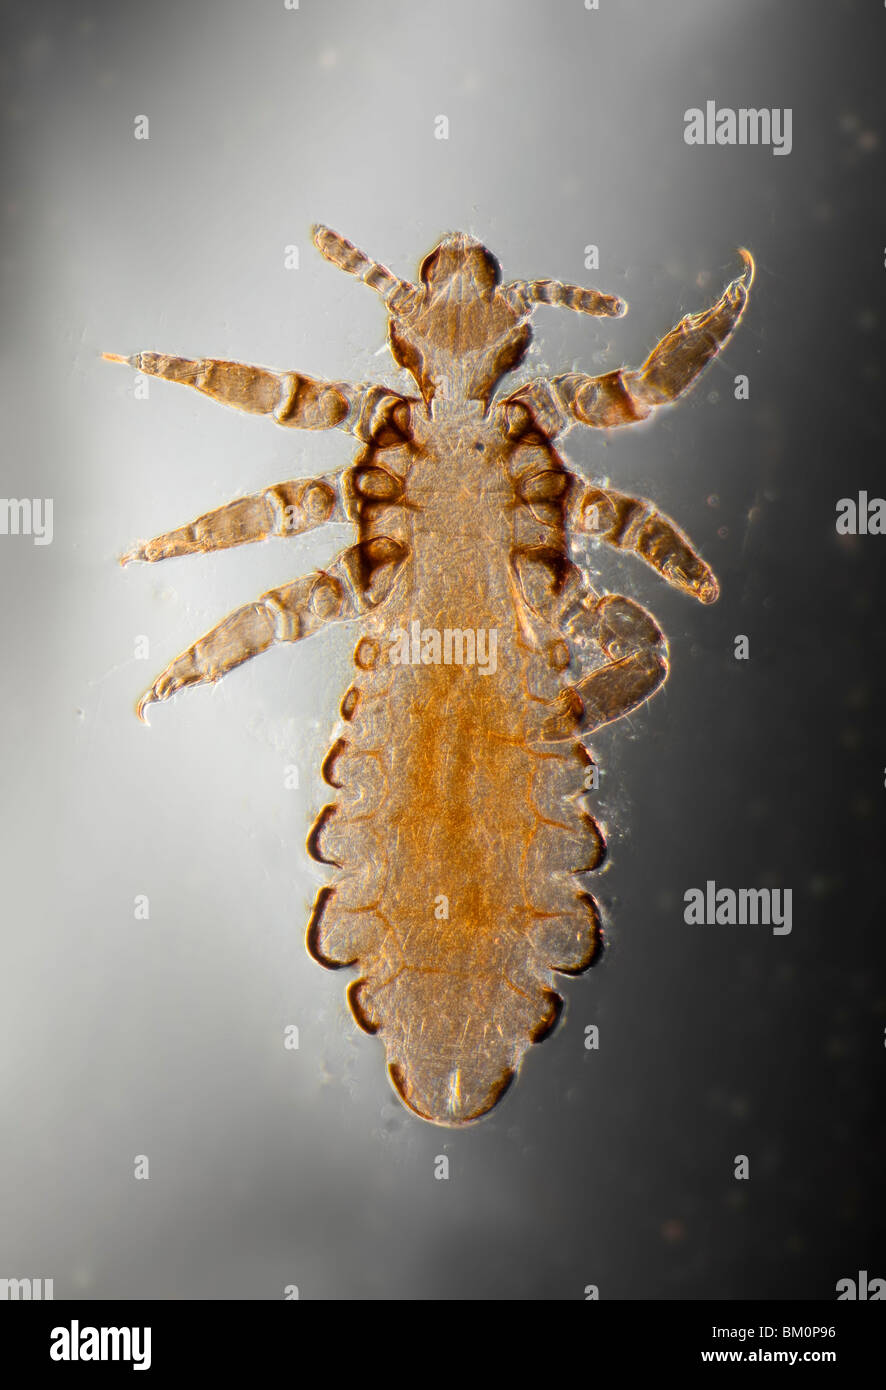 Human head louse, Pediculus humanus capitis, photomicrograph Stock Photo